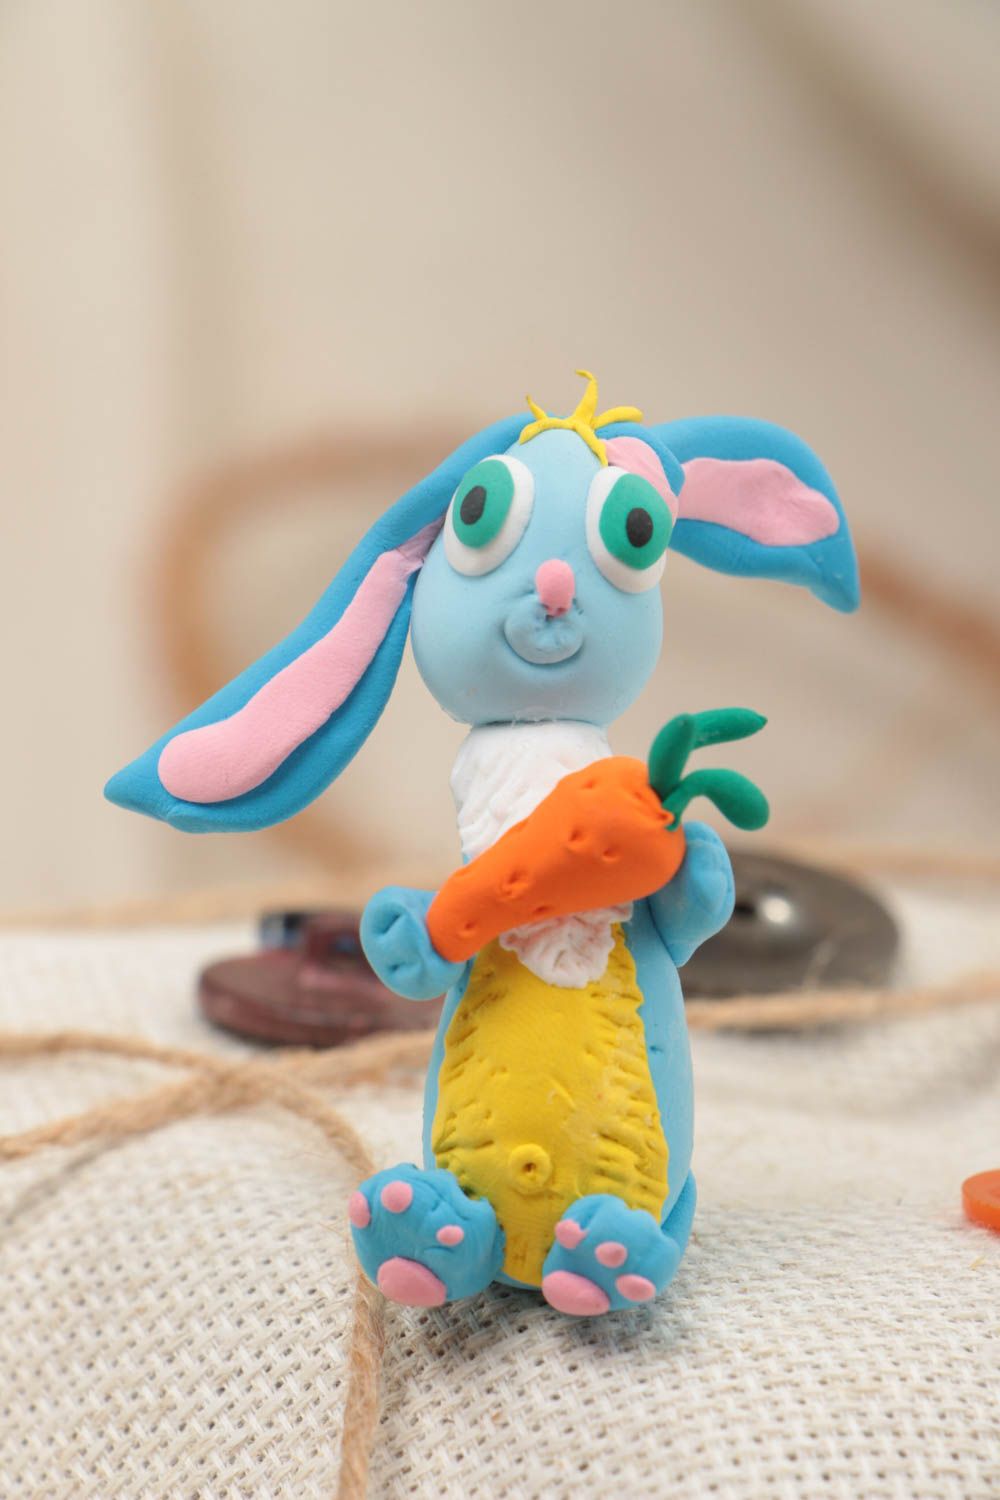 Статуэтка из полимерной глины ручной работы в виде забавного голубого зайца фото 1